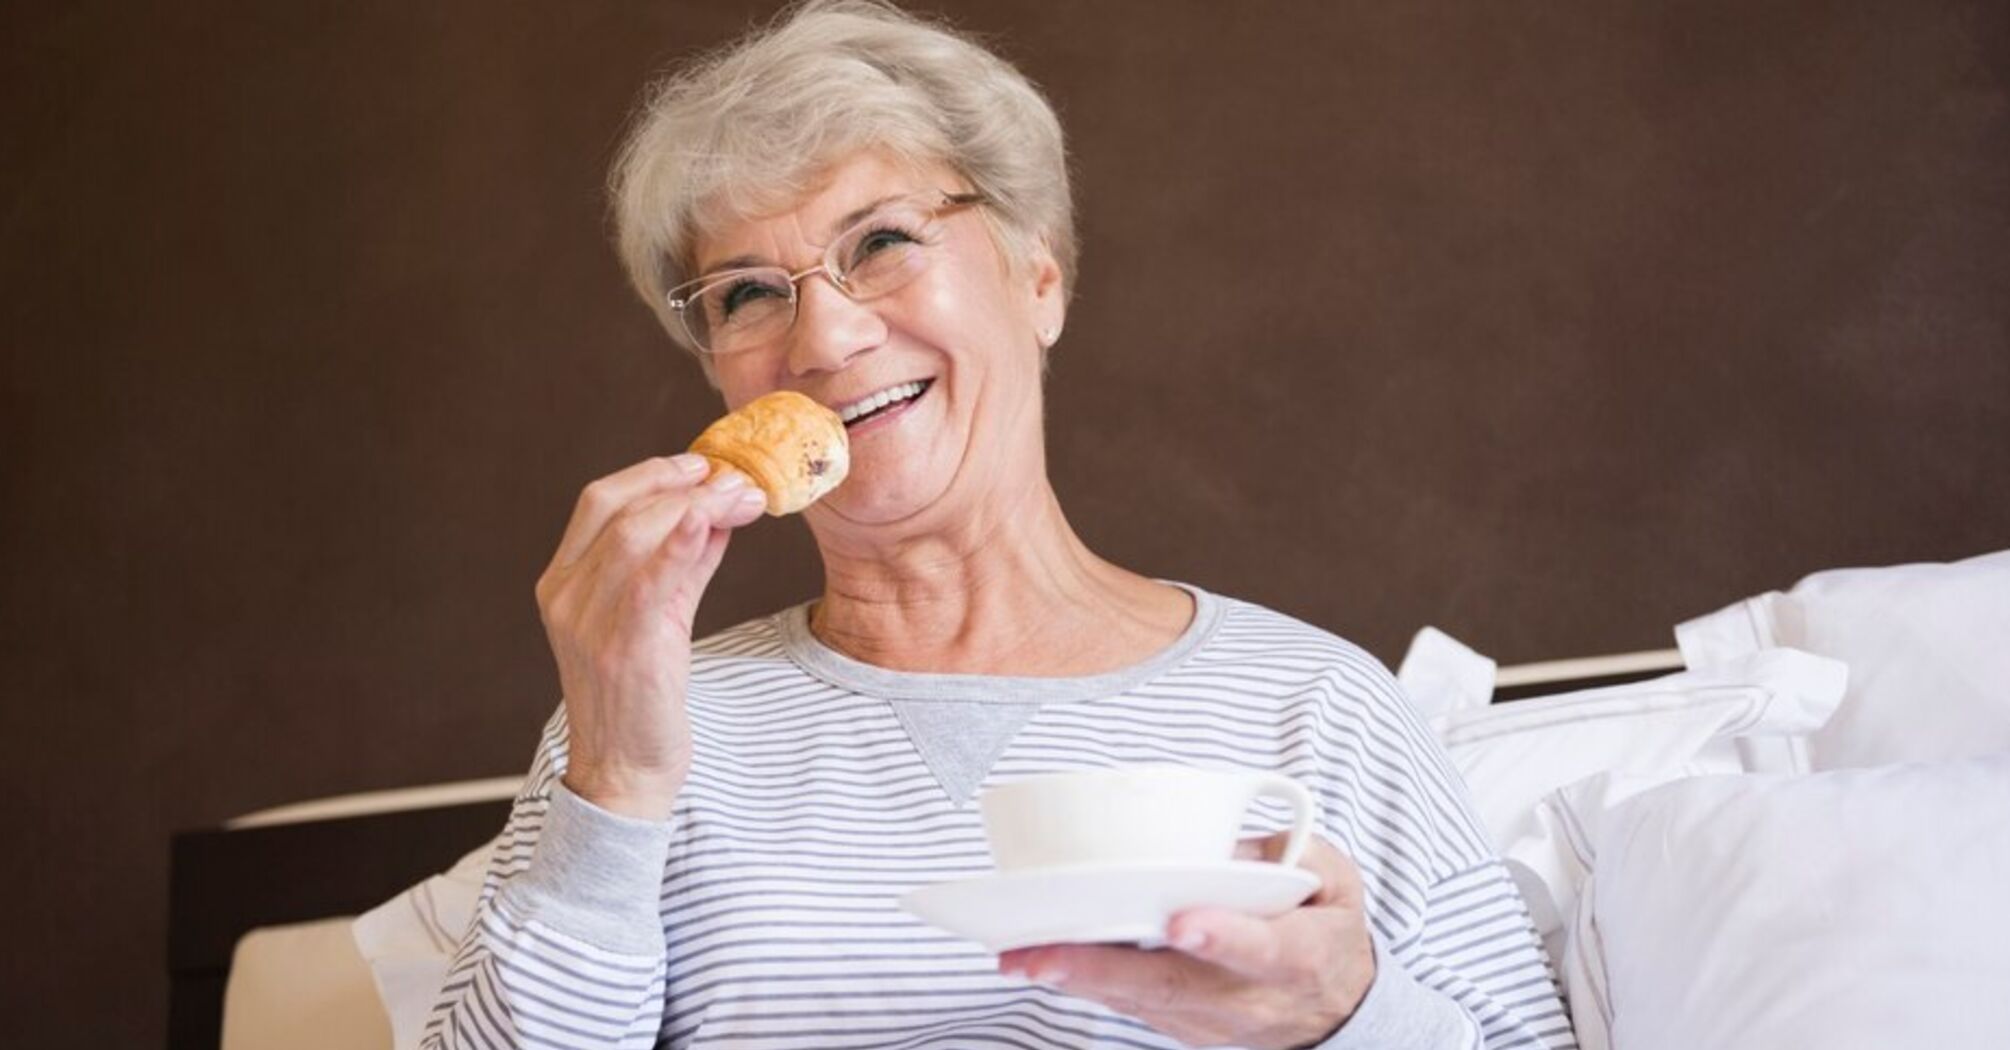 Пищевые опасности для пожилых людей: продукты, которые следует исключить из рациона